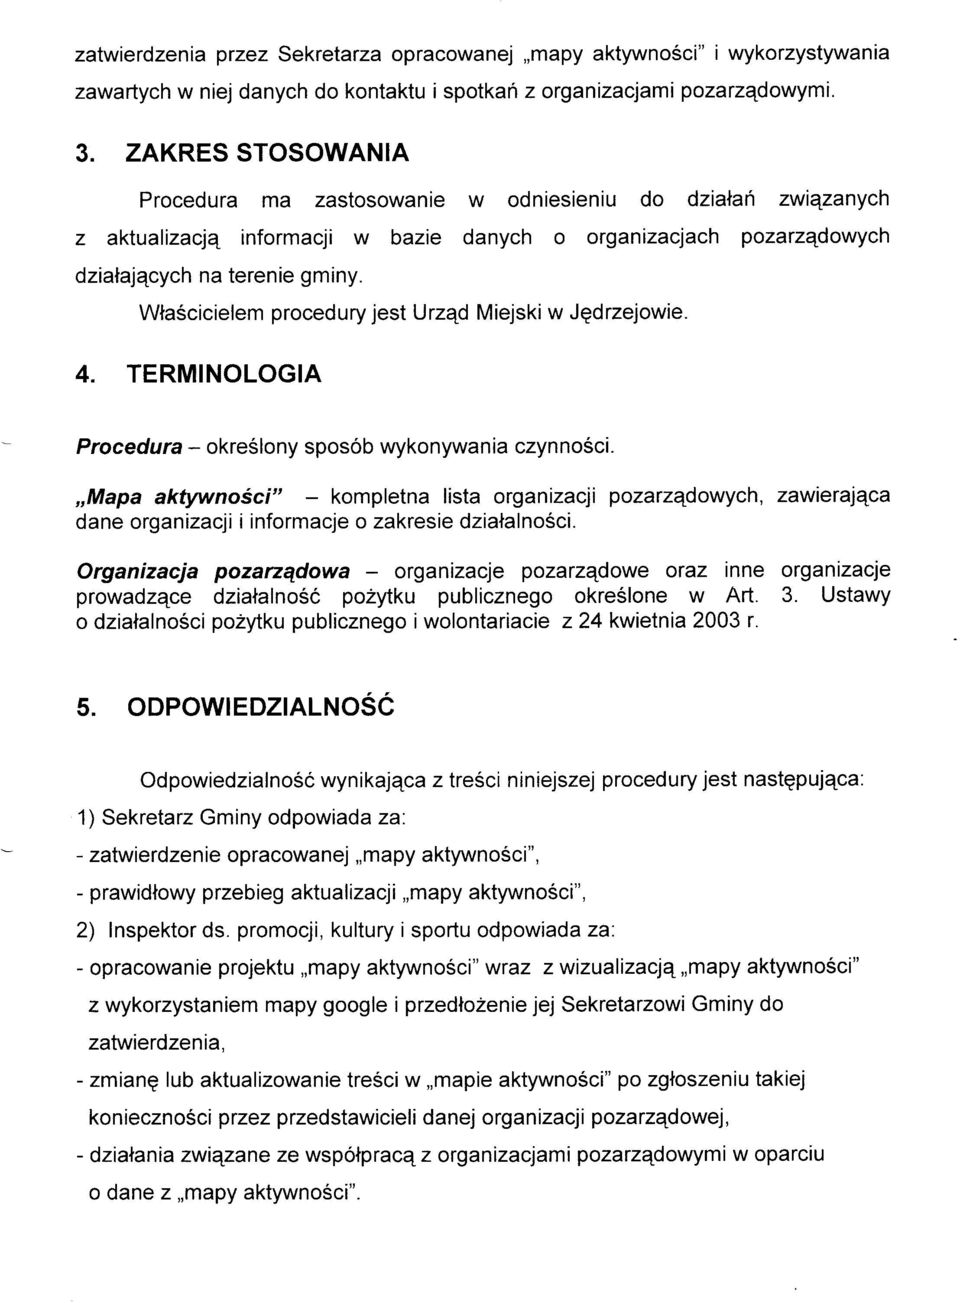 Wla5cicielem procedury jest Urzqd Miejski w Jqdrzejowie. 4. TERMINOLOGIA Procedura - okreélony sposób wykonywania czynnoéci.